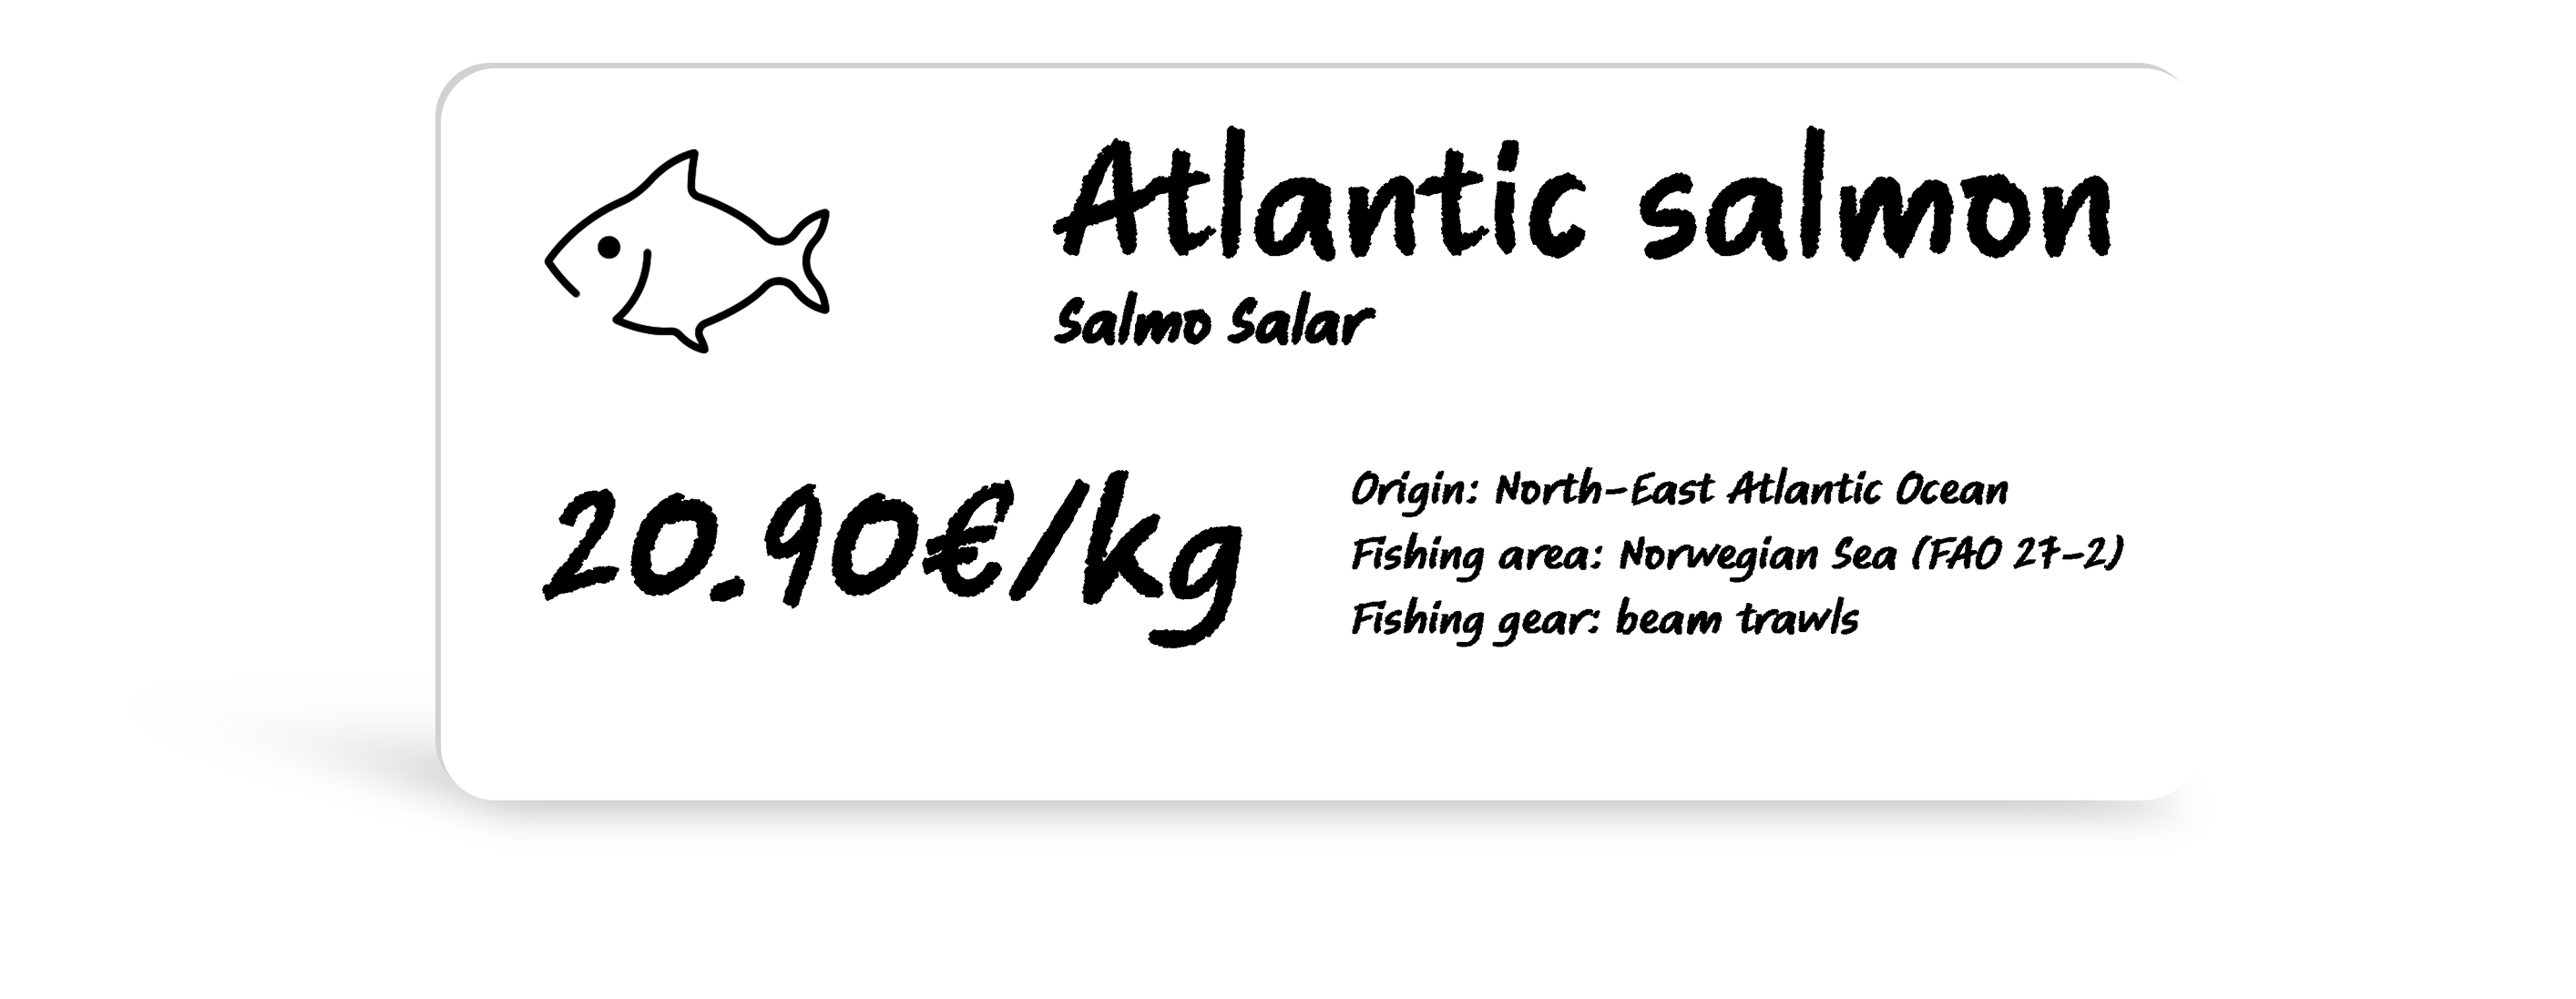 Edikio Salmon 120x50 Price tag